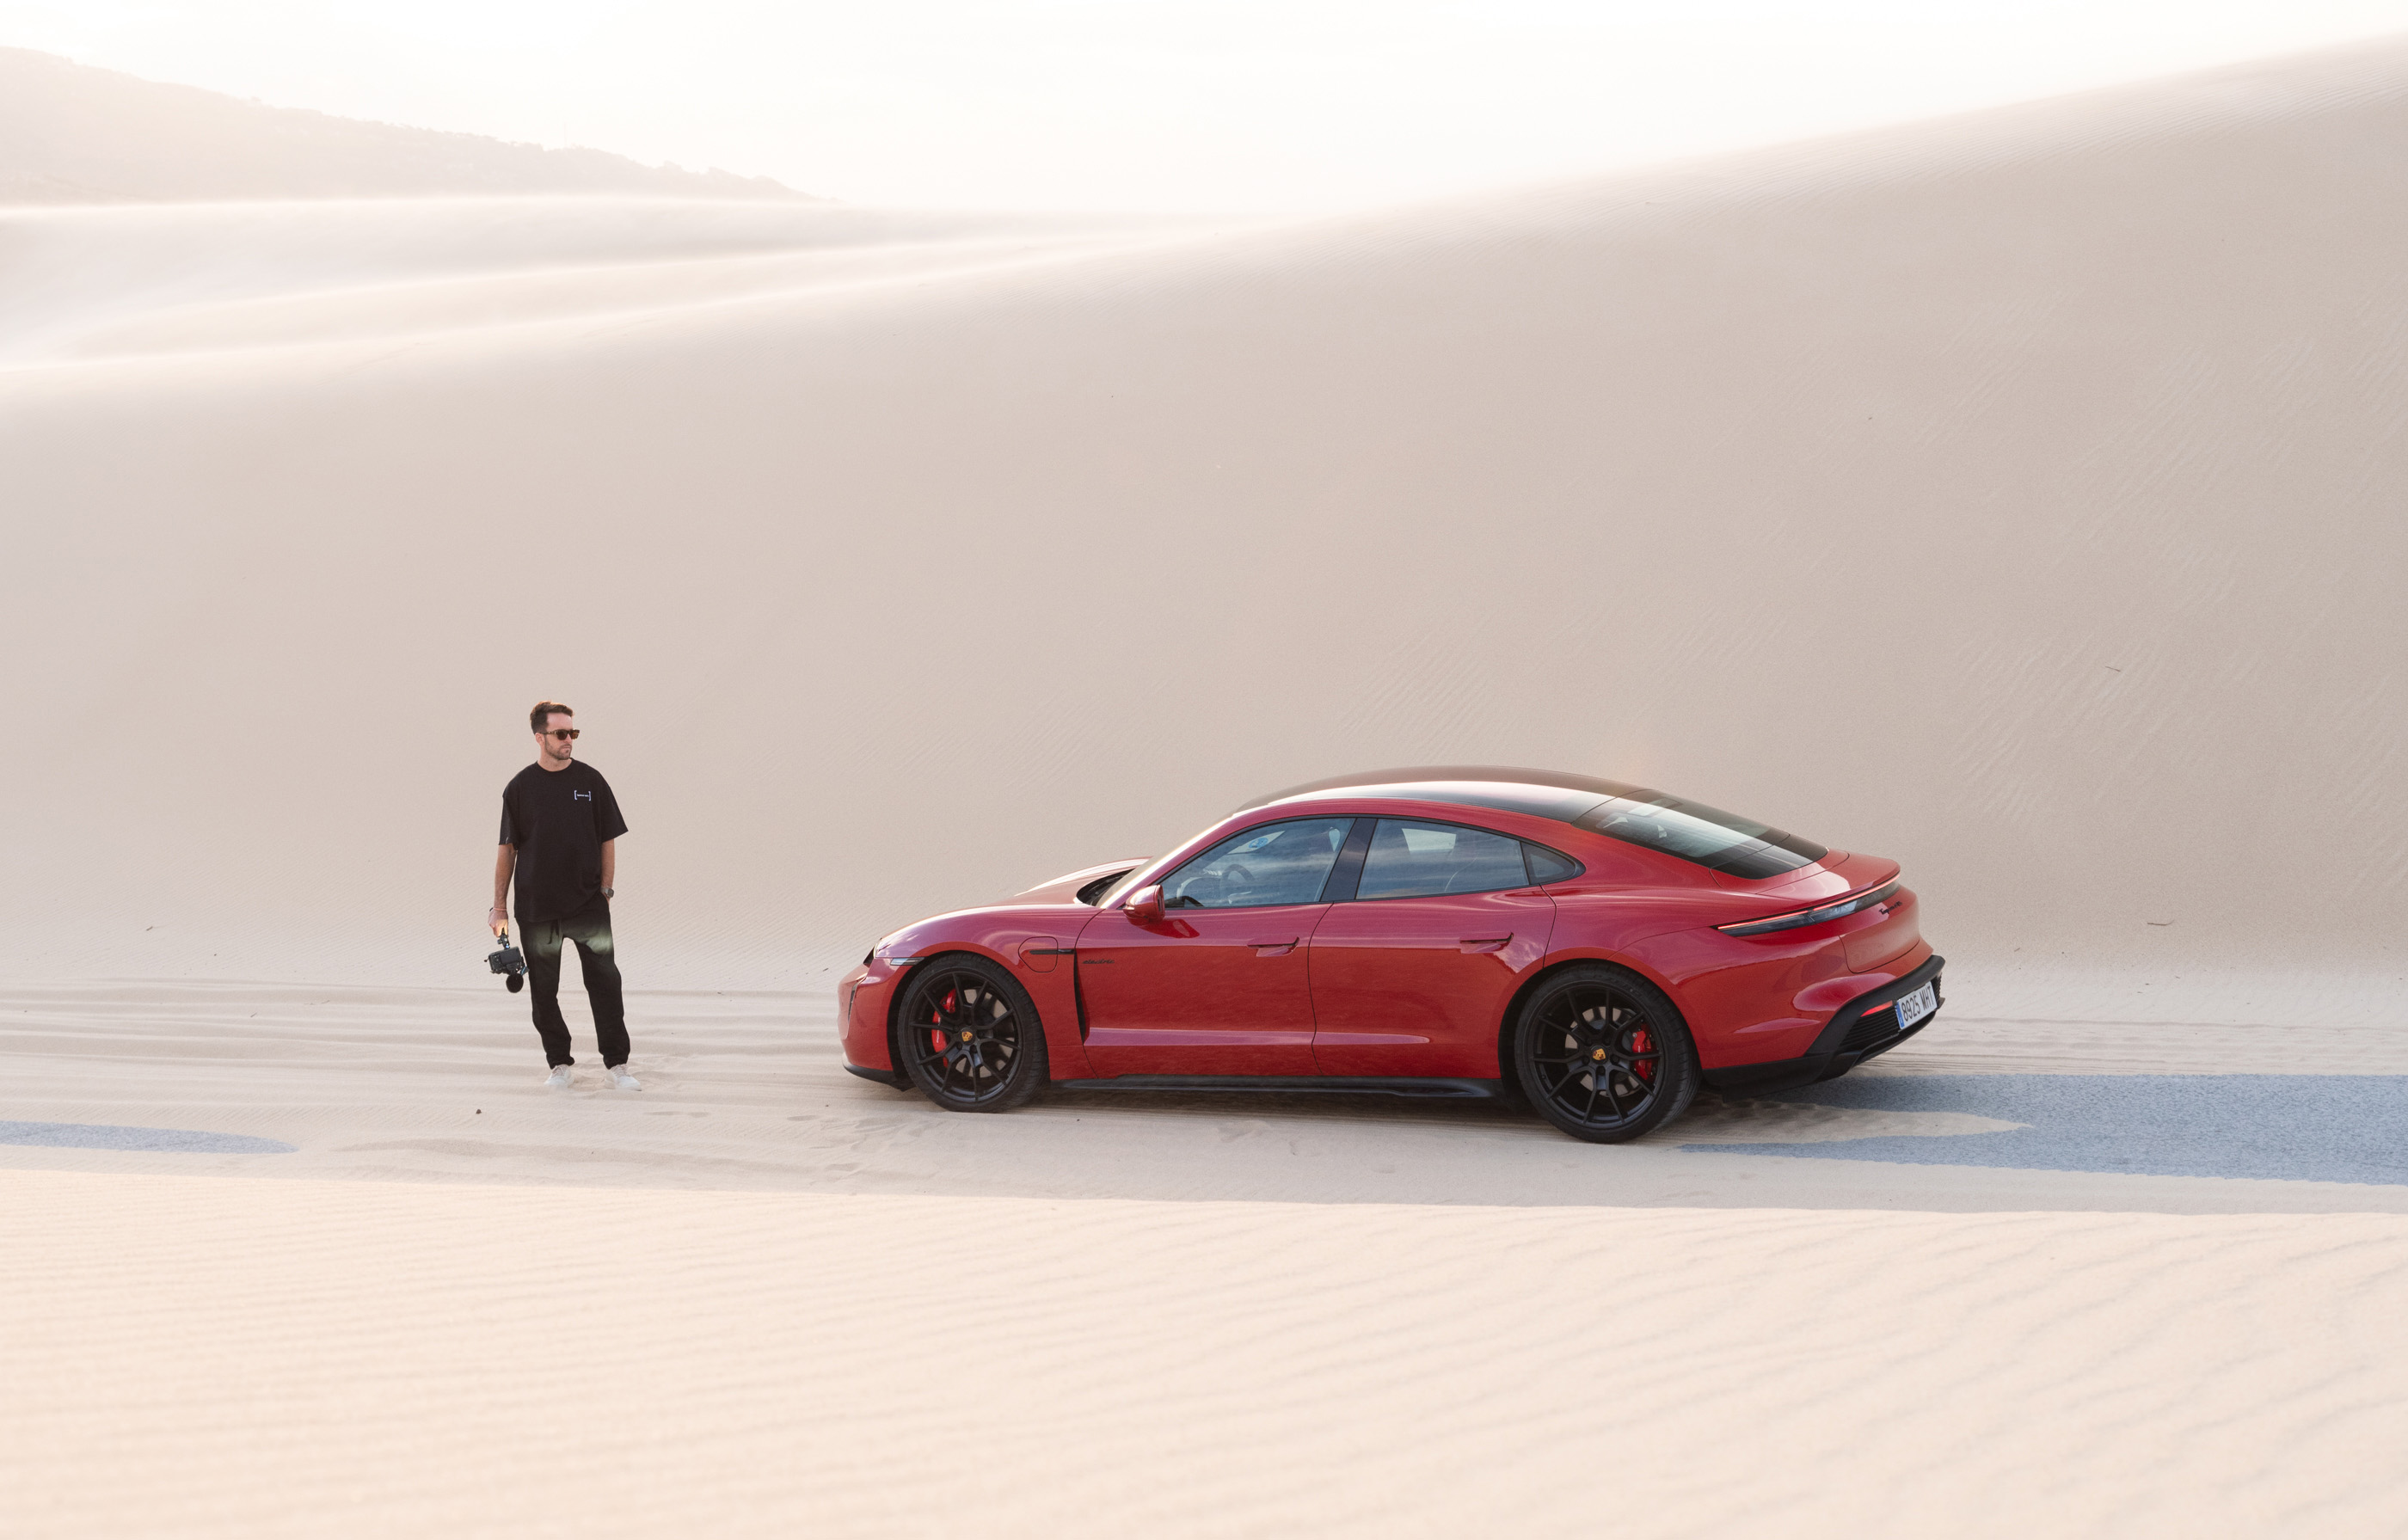 Man stands next to red Porsche Taycan in sand dunes